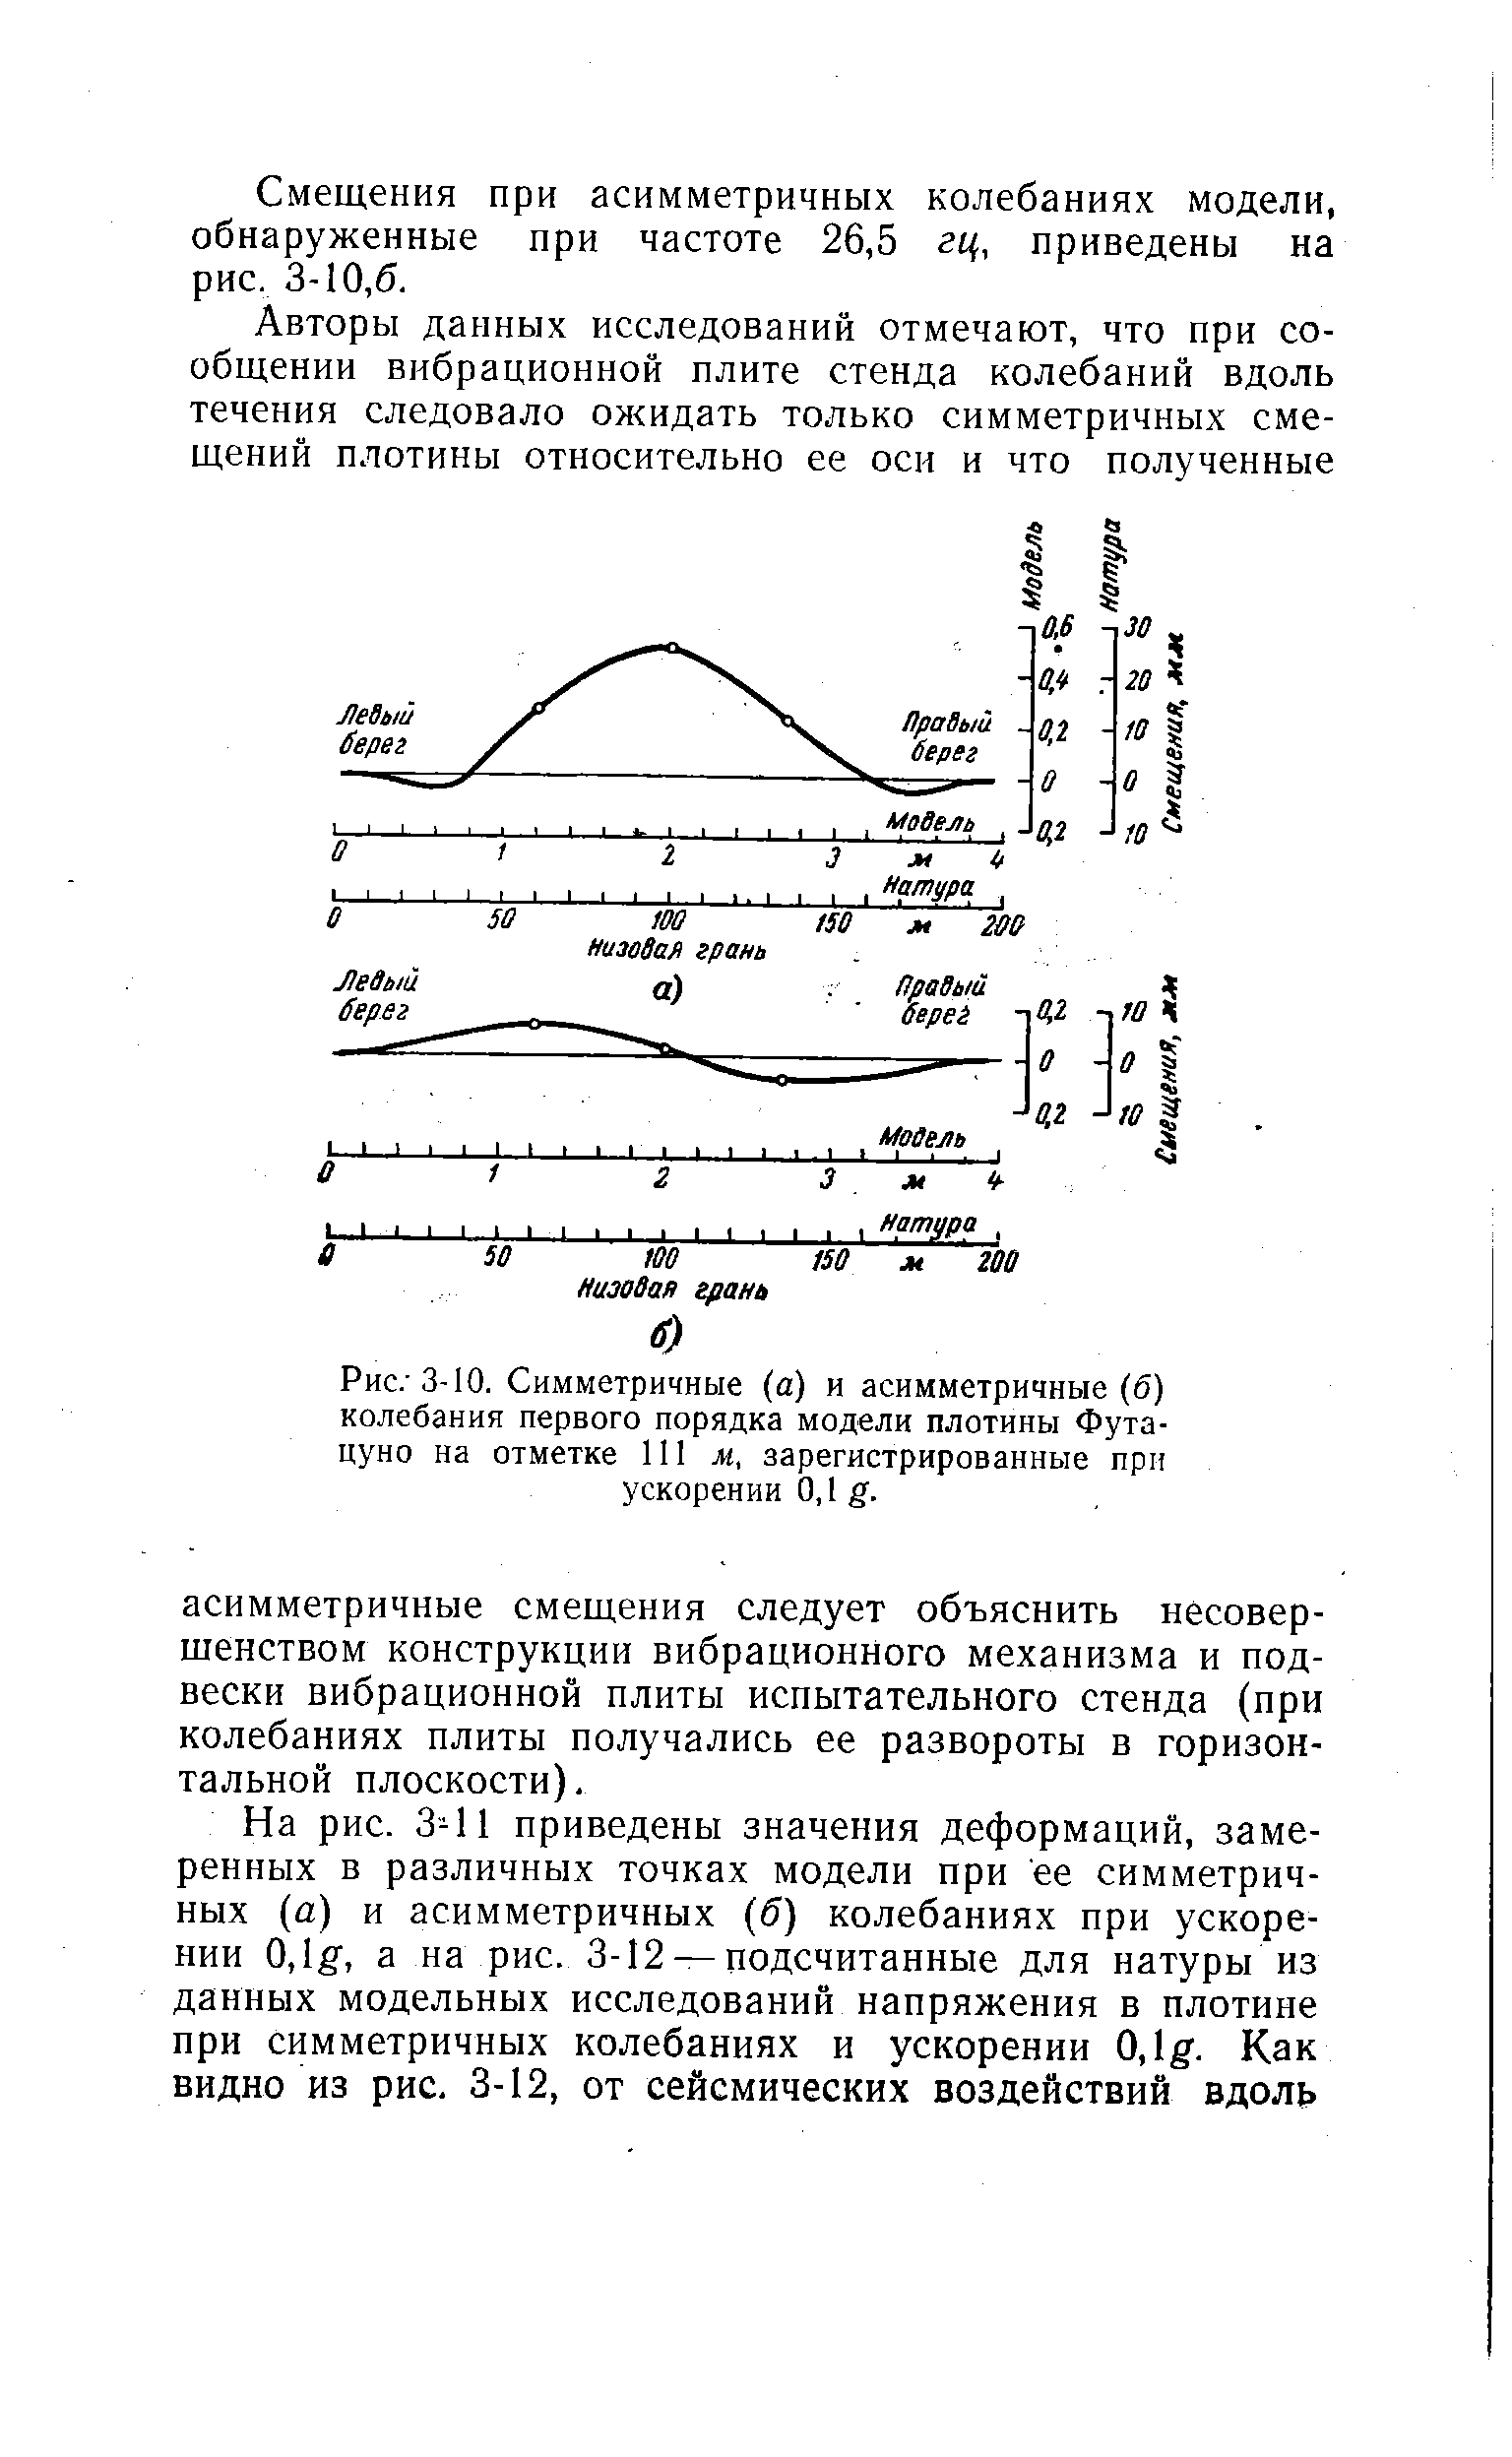 Рис.-3-10. Симметричные (а) и асимметричные (б) колебания первого порядка модели плотины Фута-цуно на отметке 111 м, зарегистрированные при ускорении 0,1 gf.